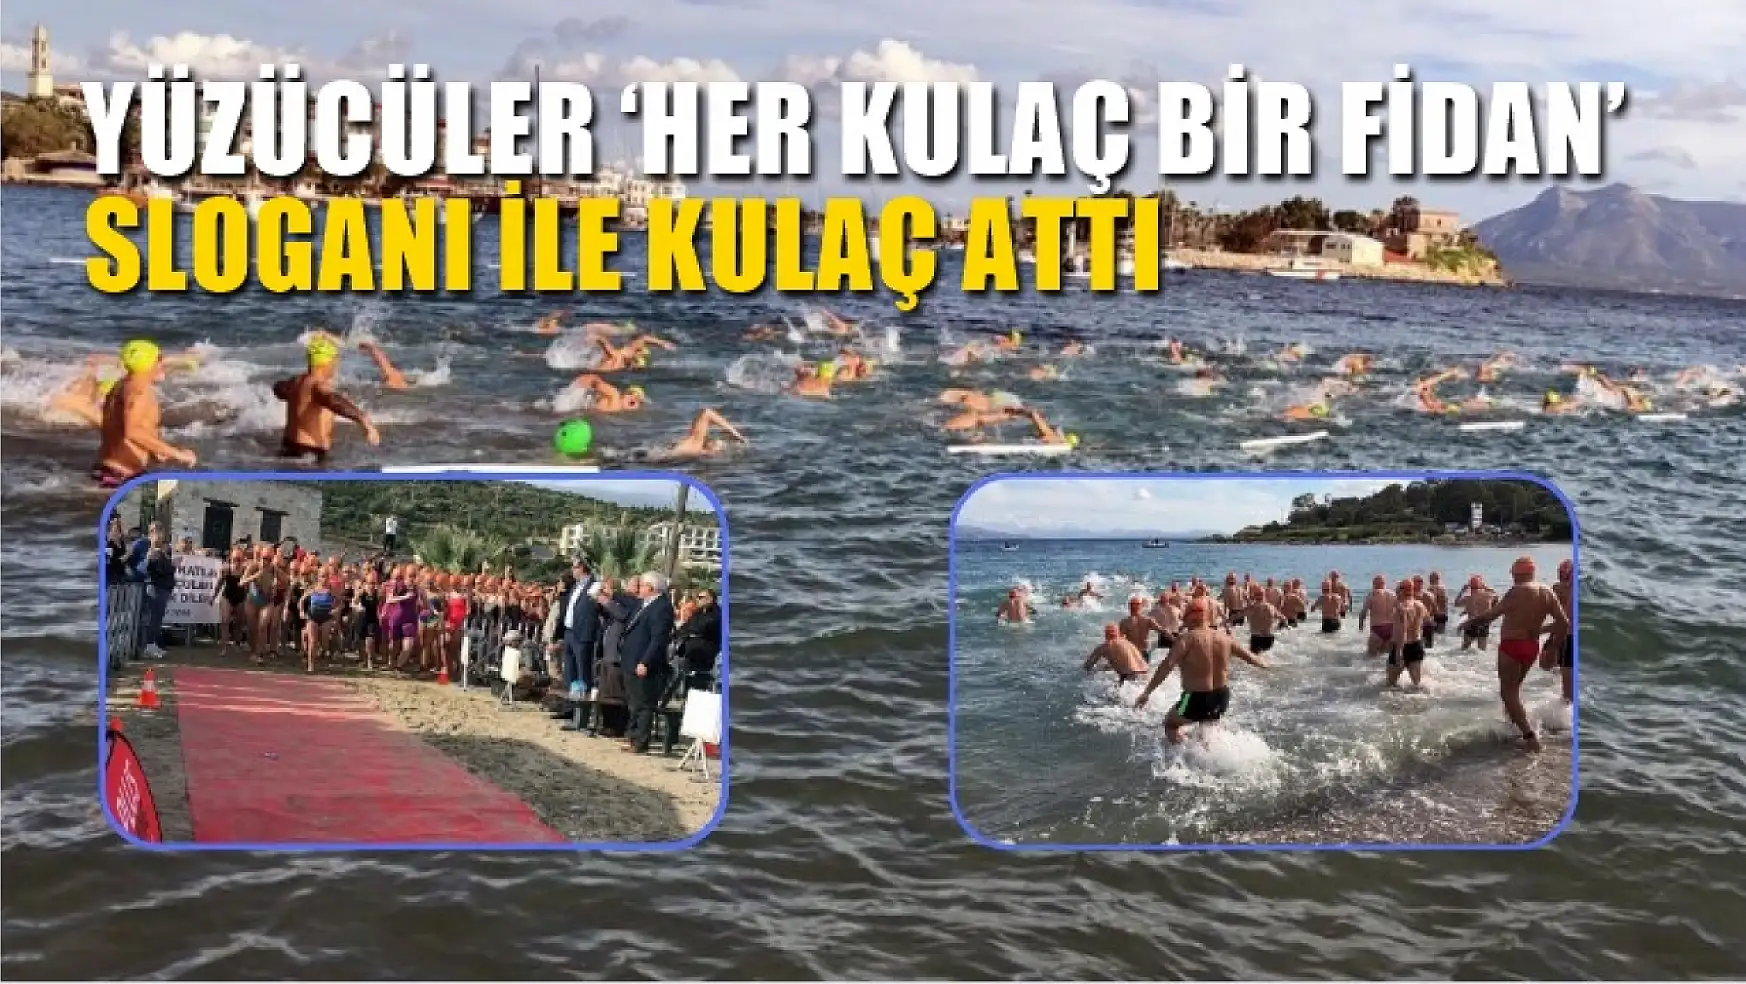 Yüzücüler 'Her kulaç bir fidan' sloganı ile kulaç attı